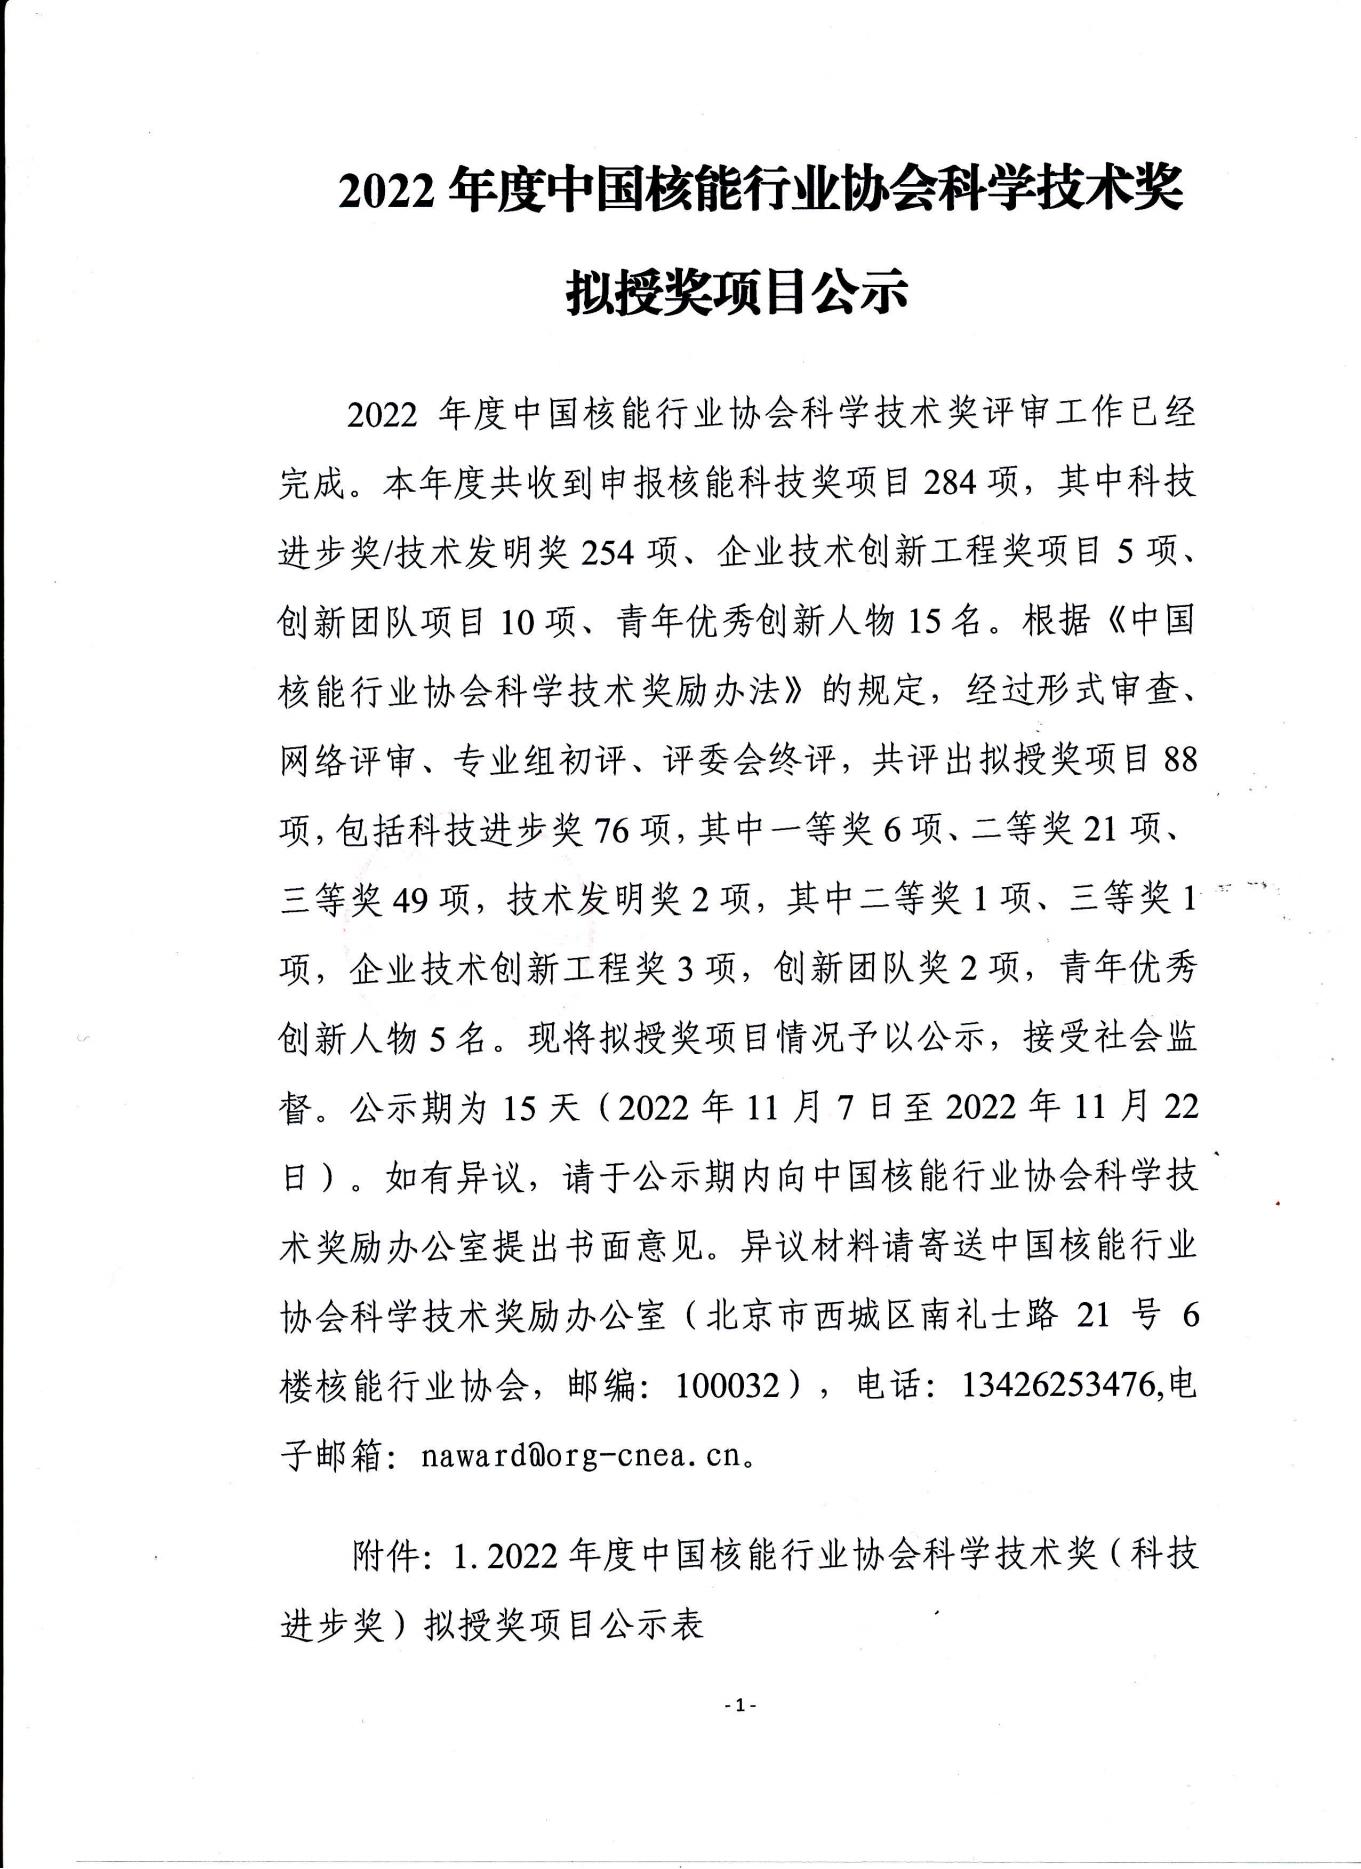 2022年度中国核能行业协会科学技术奖拟授奖项目公示（函）_00.jpg